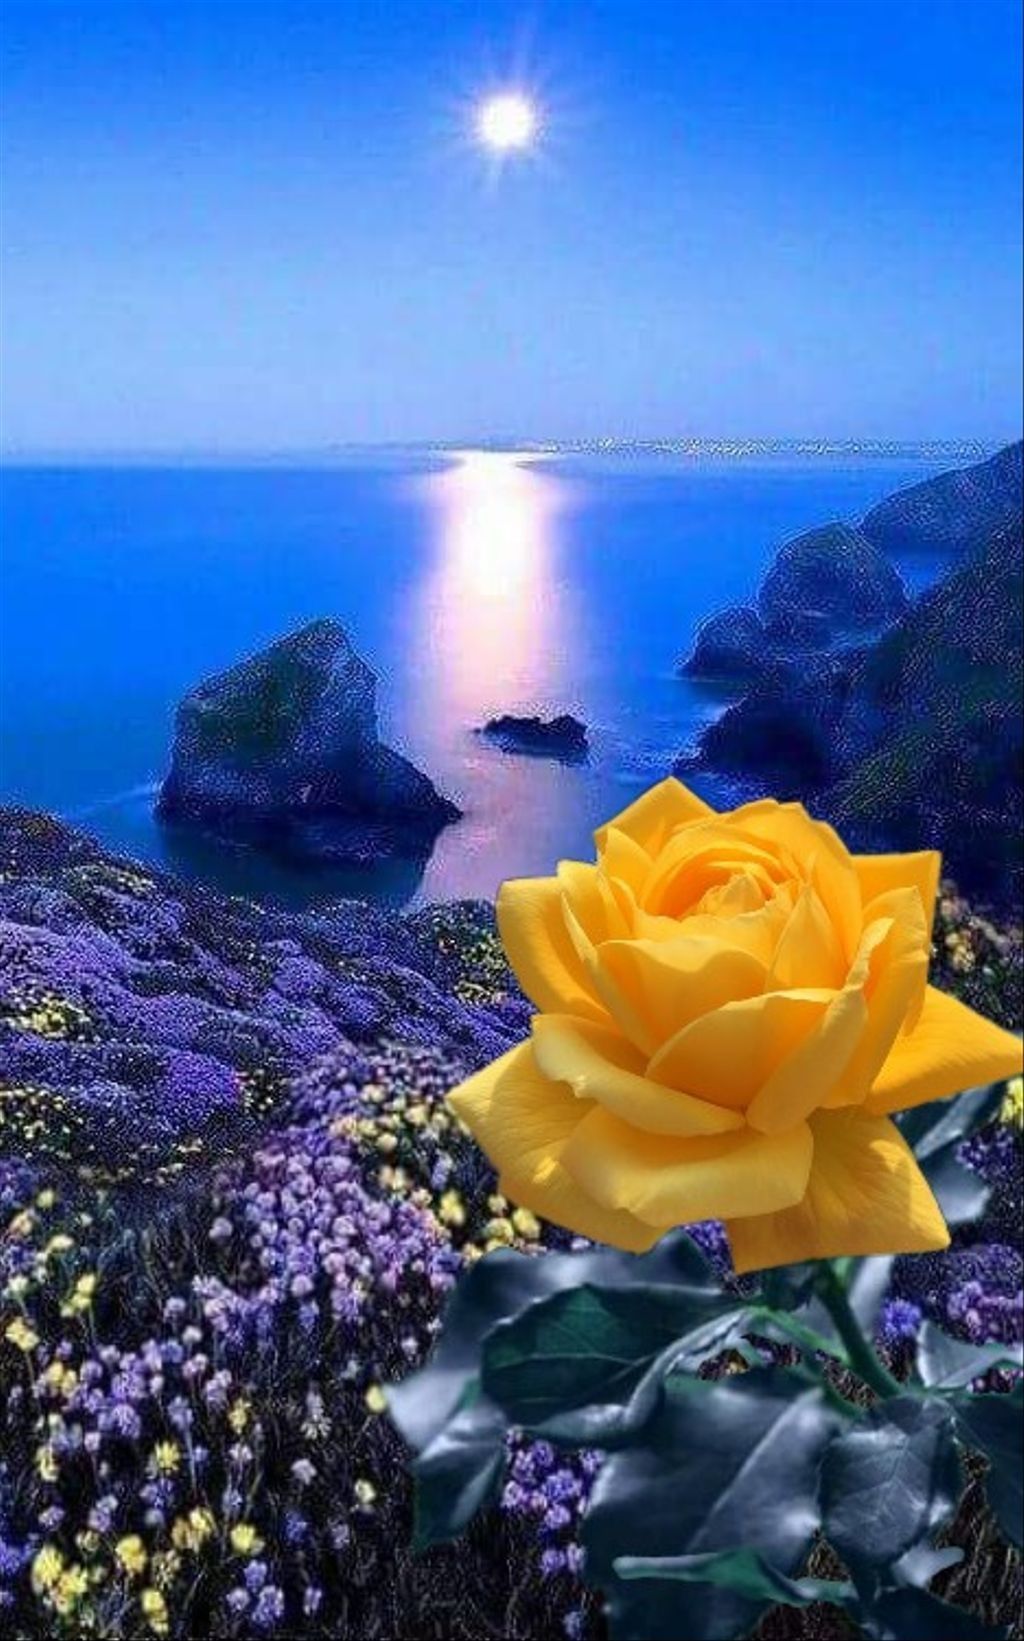 Благословенной весенней ночи. Спокойной ночи цветы. Цветы и море. Спокойной ночи цветы и море. Добрый вечер спокойной ночи цветы.